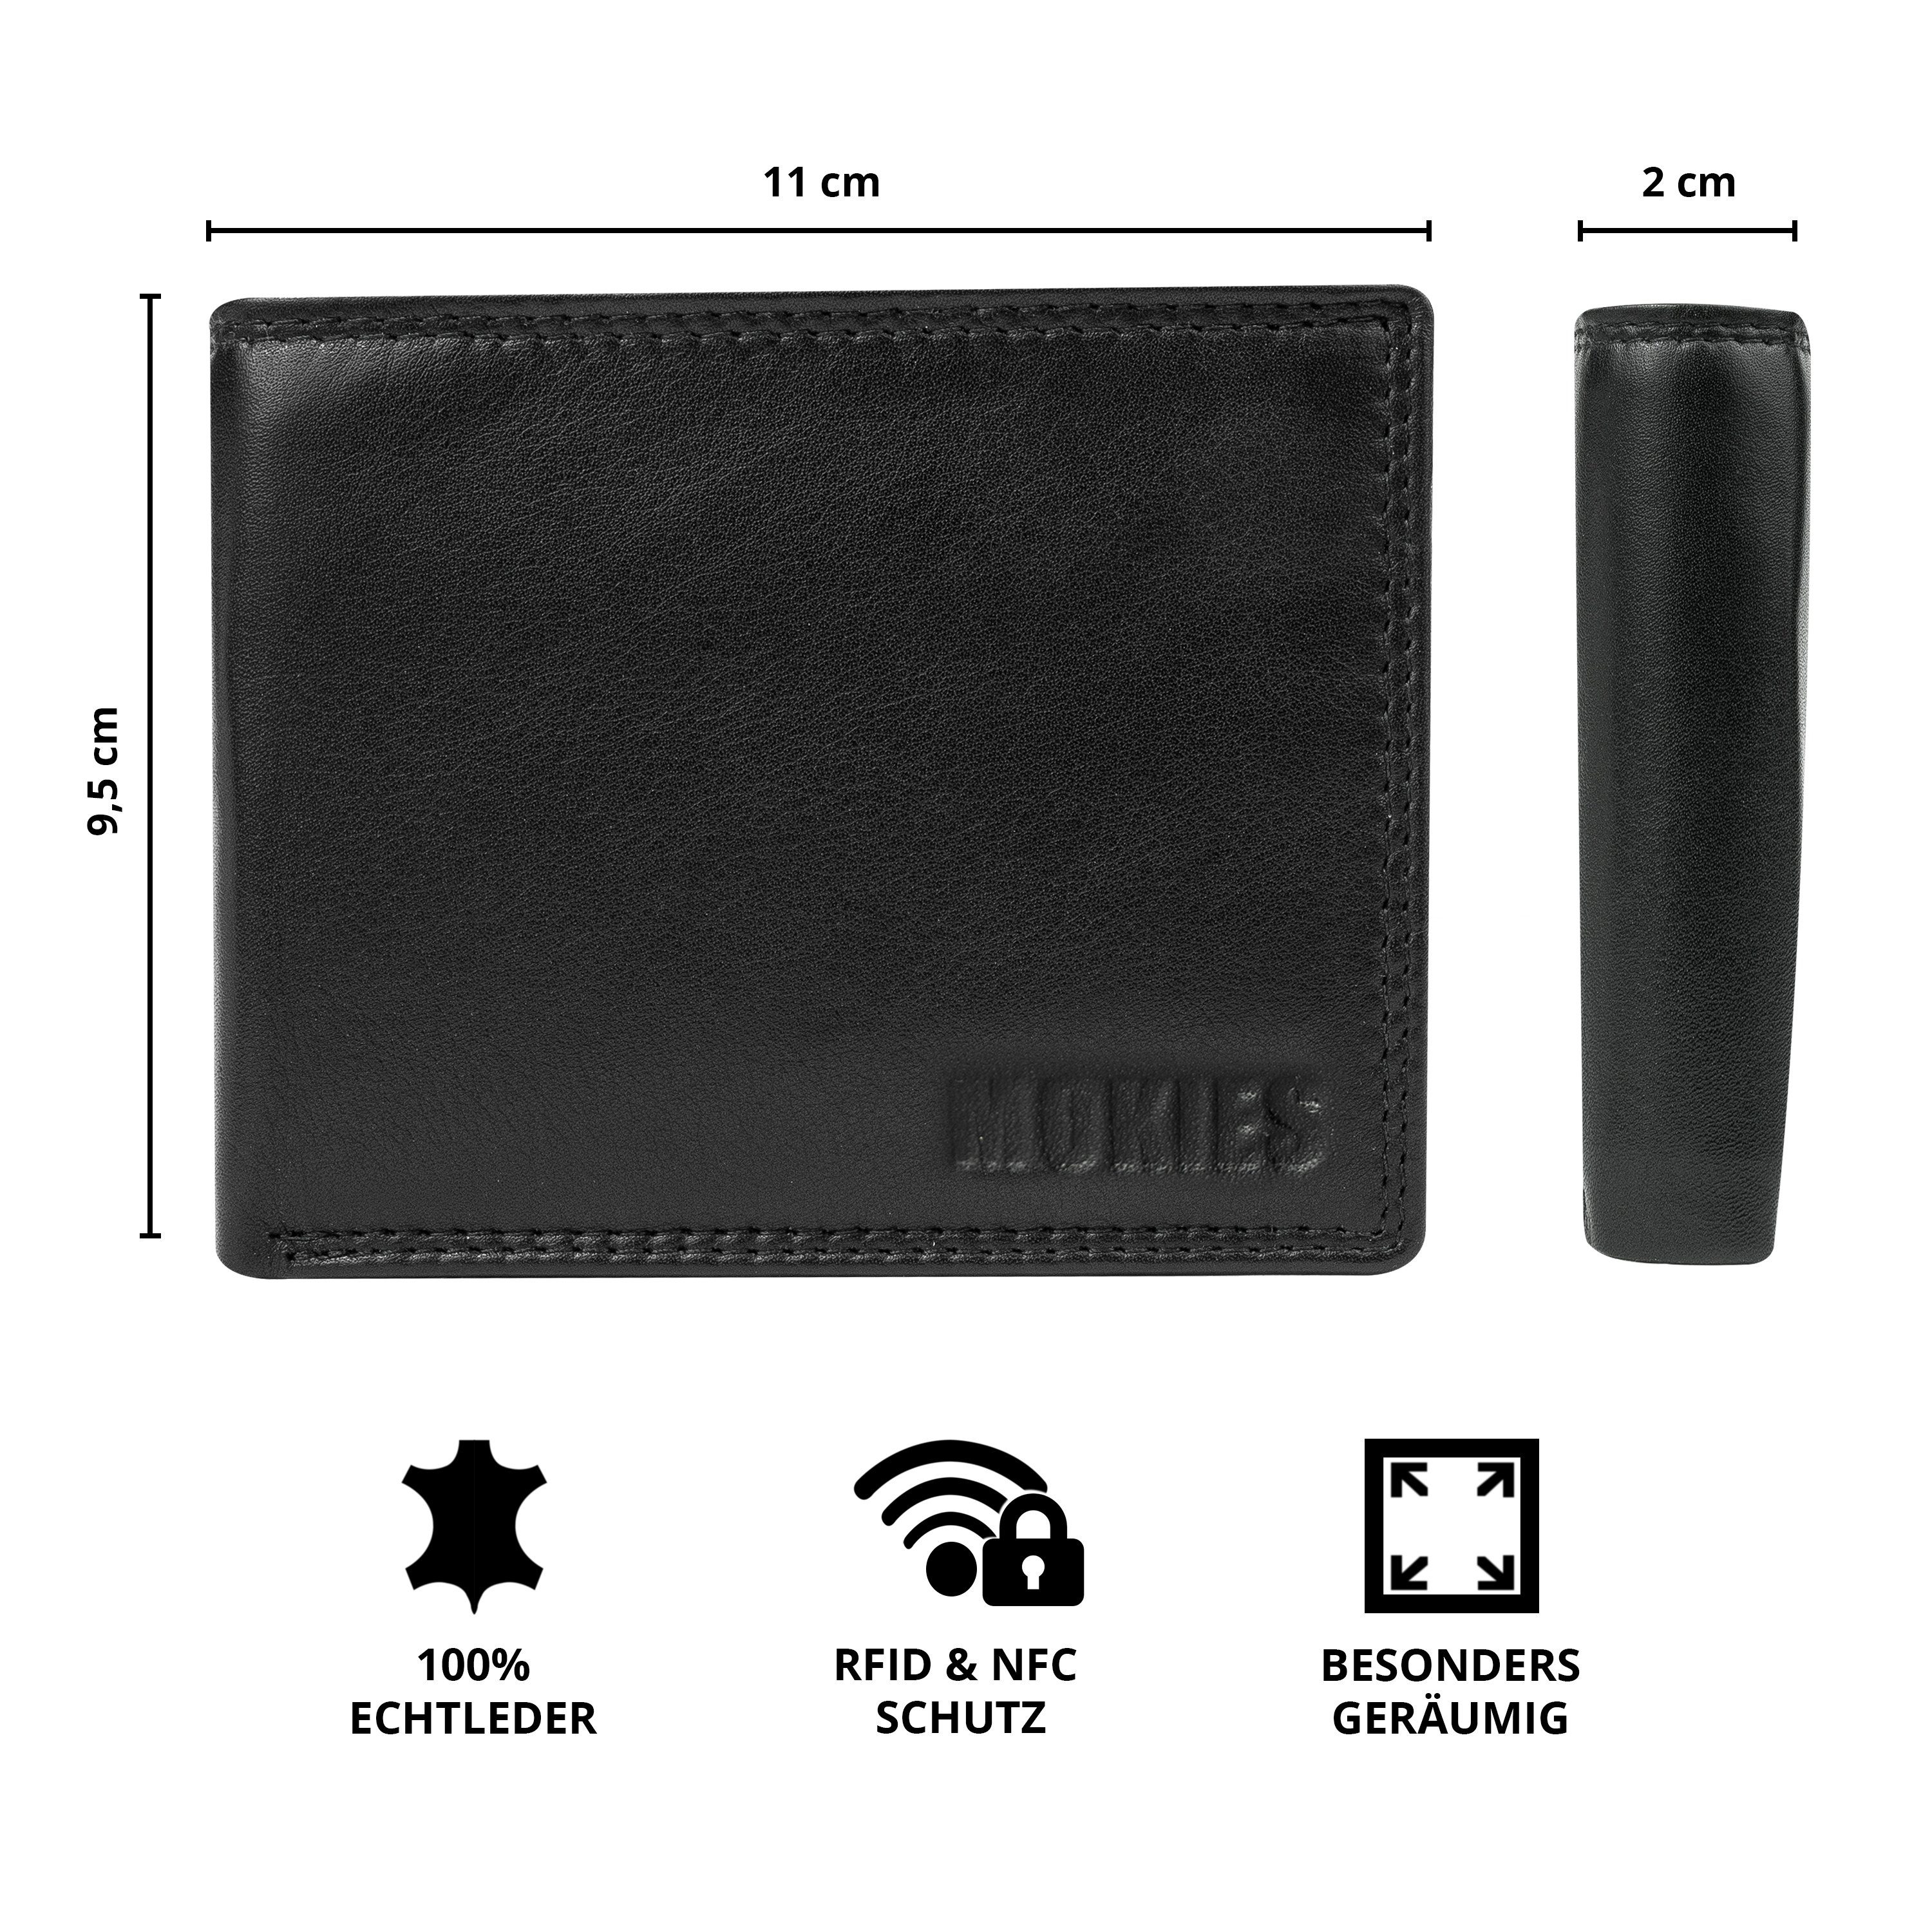 Herren Nappa RFID-/NFC-Schutz, Premium Portemonnaie Geschenkbox Geldbörse (querformat), 100% Premium MOKIES Echt-Leder, Nappa-Leder, GN101